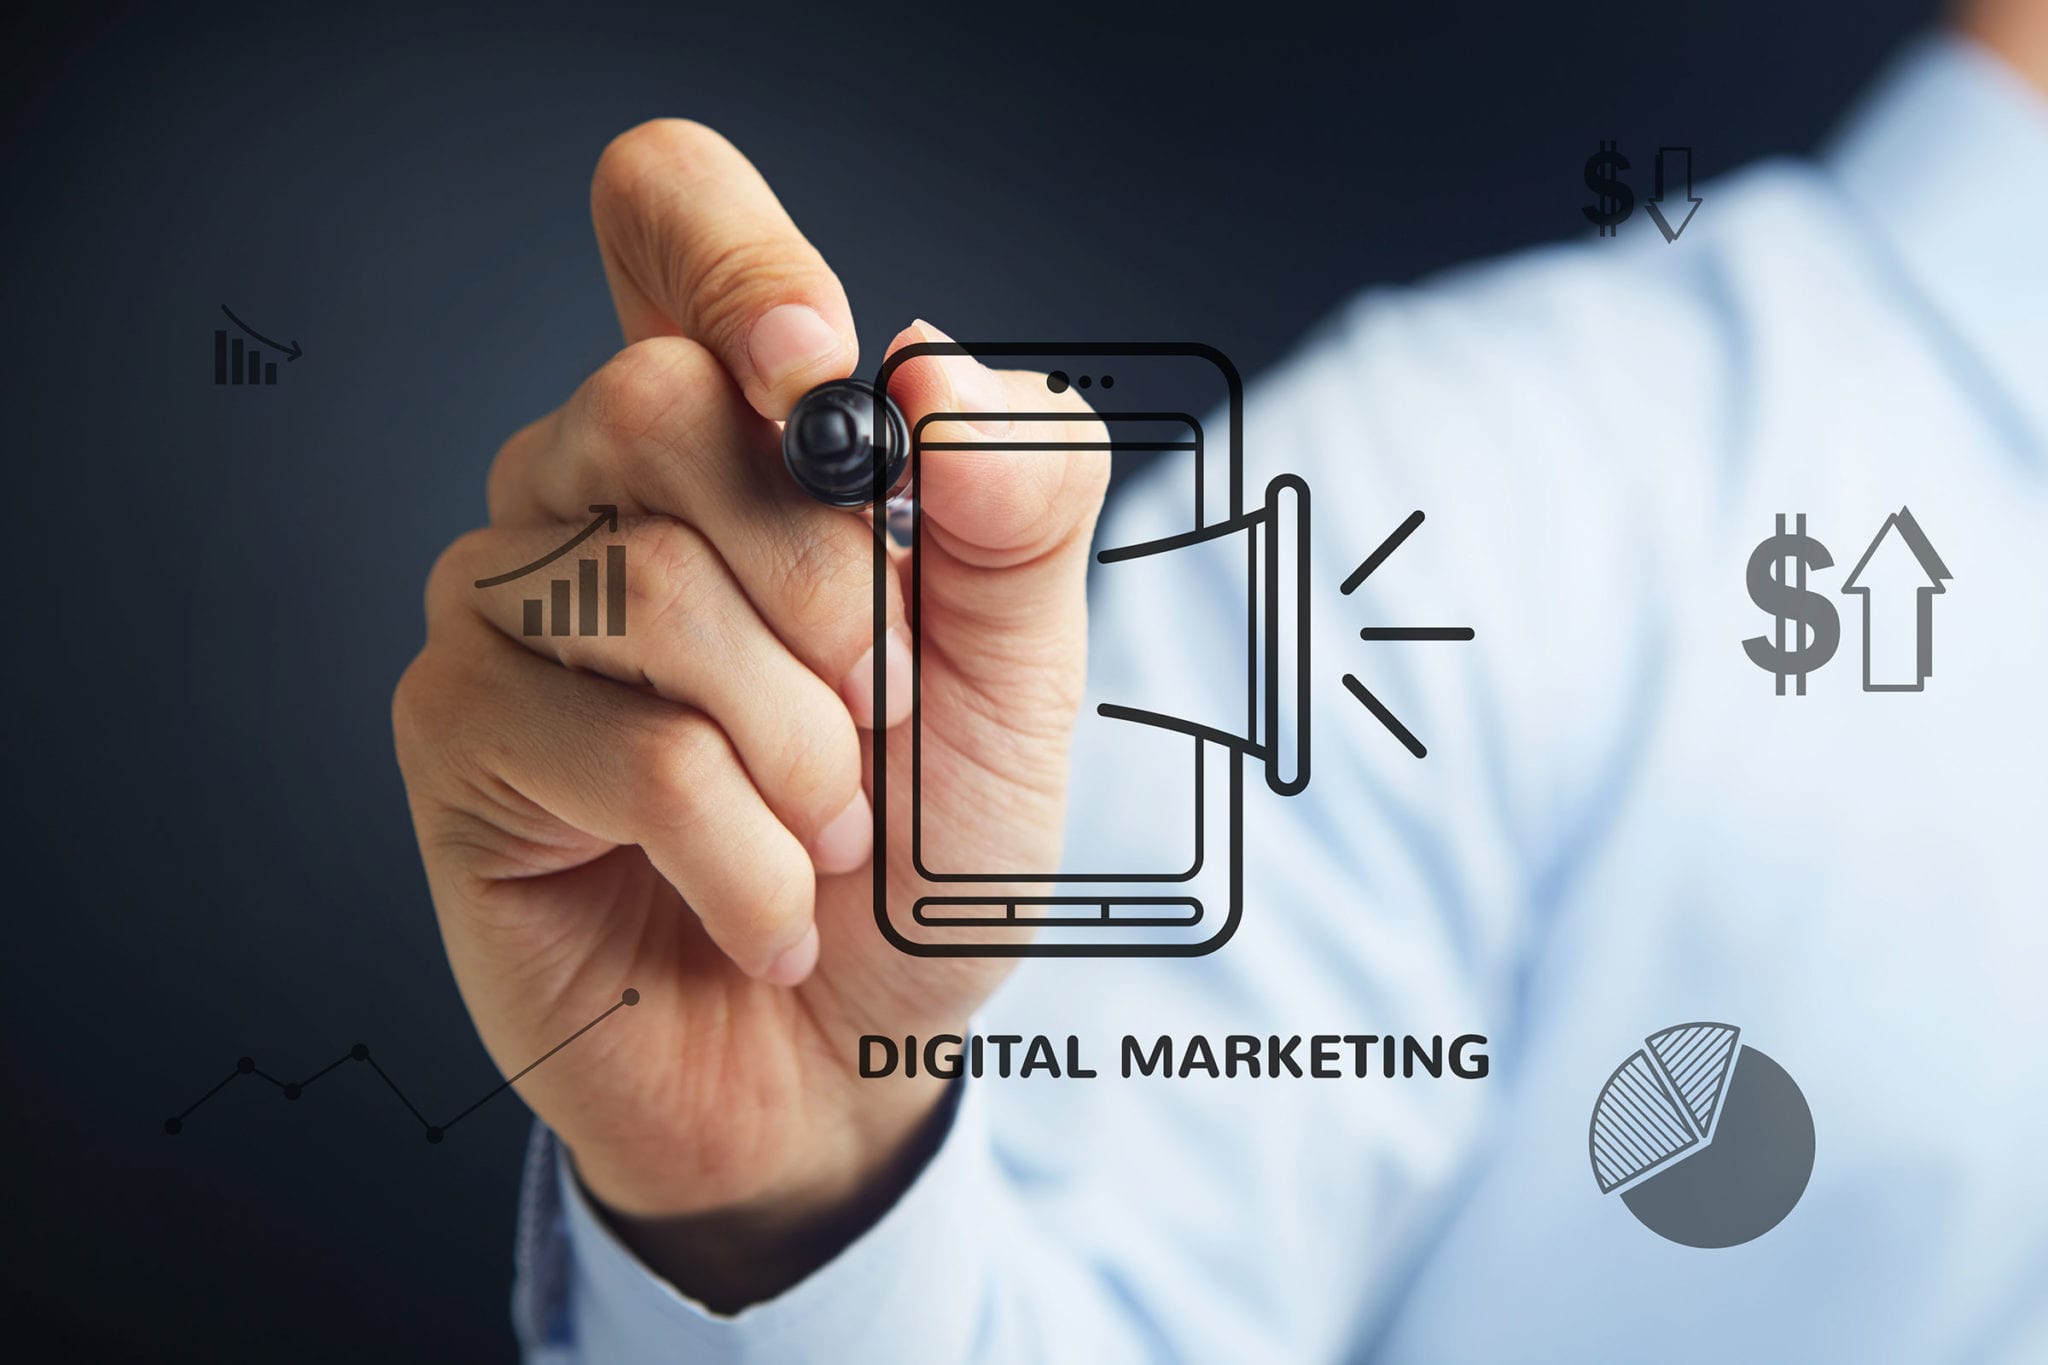 2019 Digital Marketing Trends